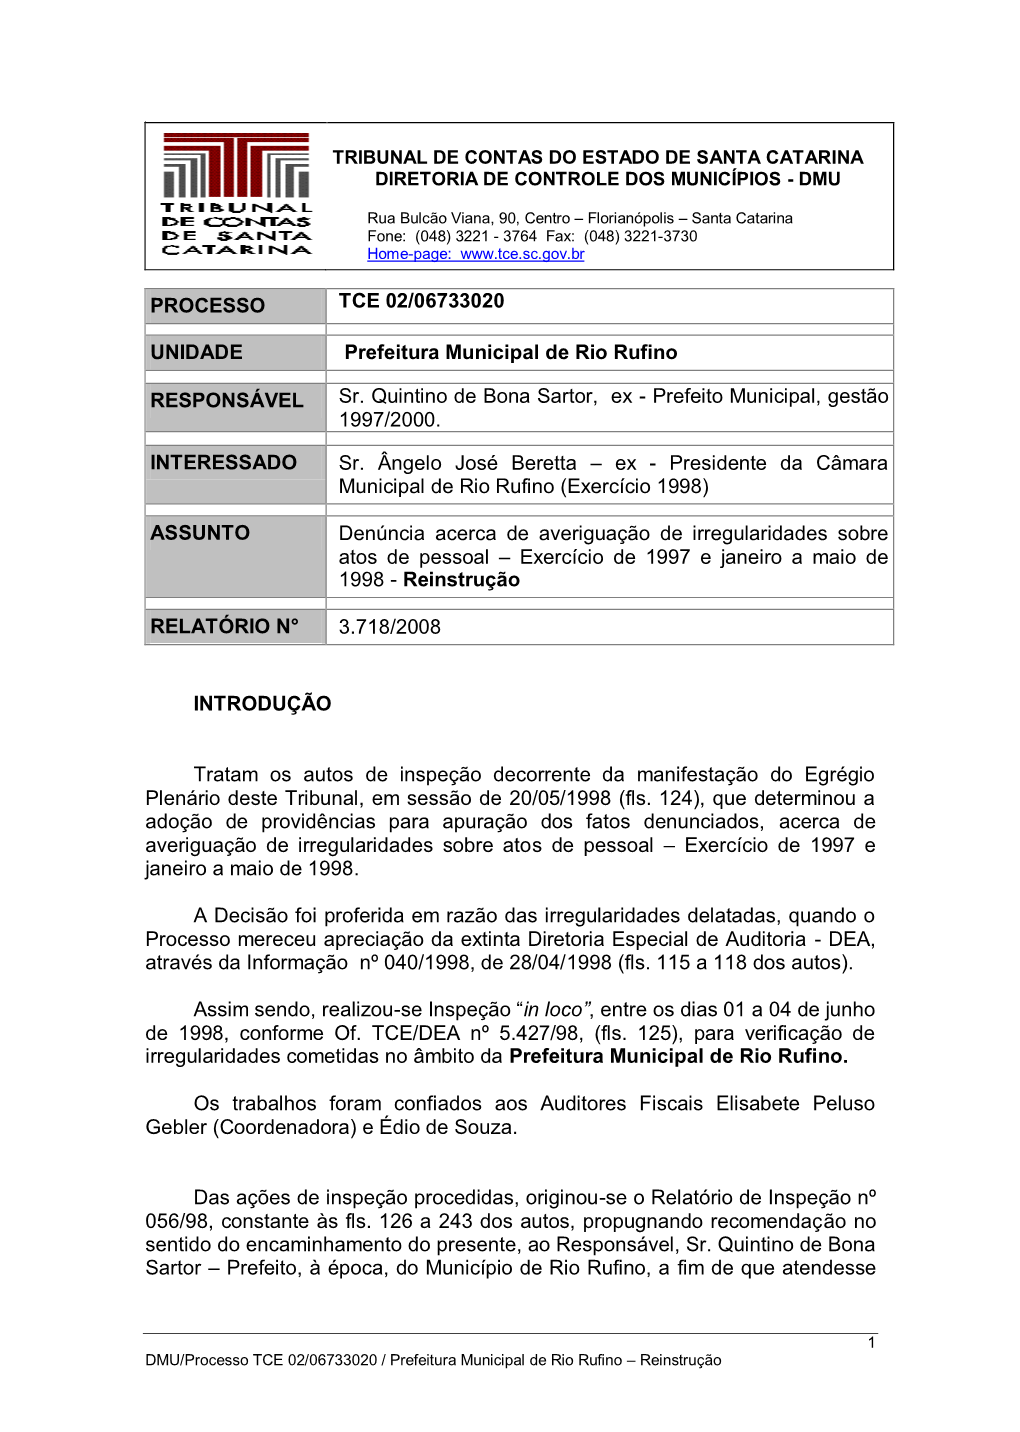 PROCESSO TCE 02/06733020 UNIDADE Prefeitura Municipal De Rio Rufino RESPONSÁVEL Sr. Quintino De Bona Sartor, Ex